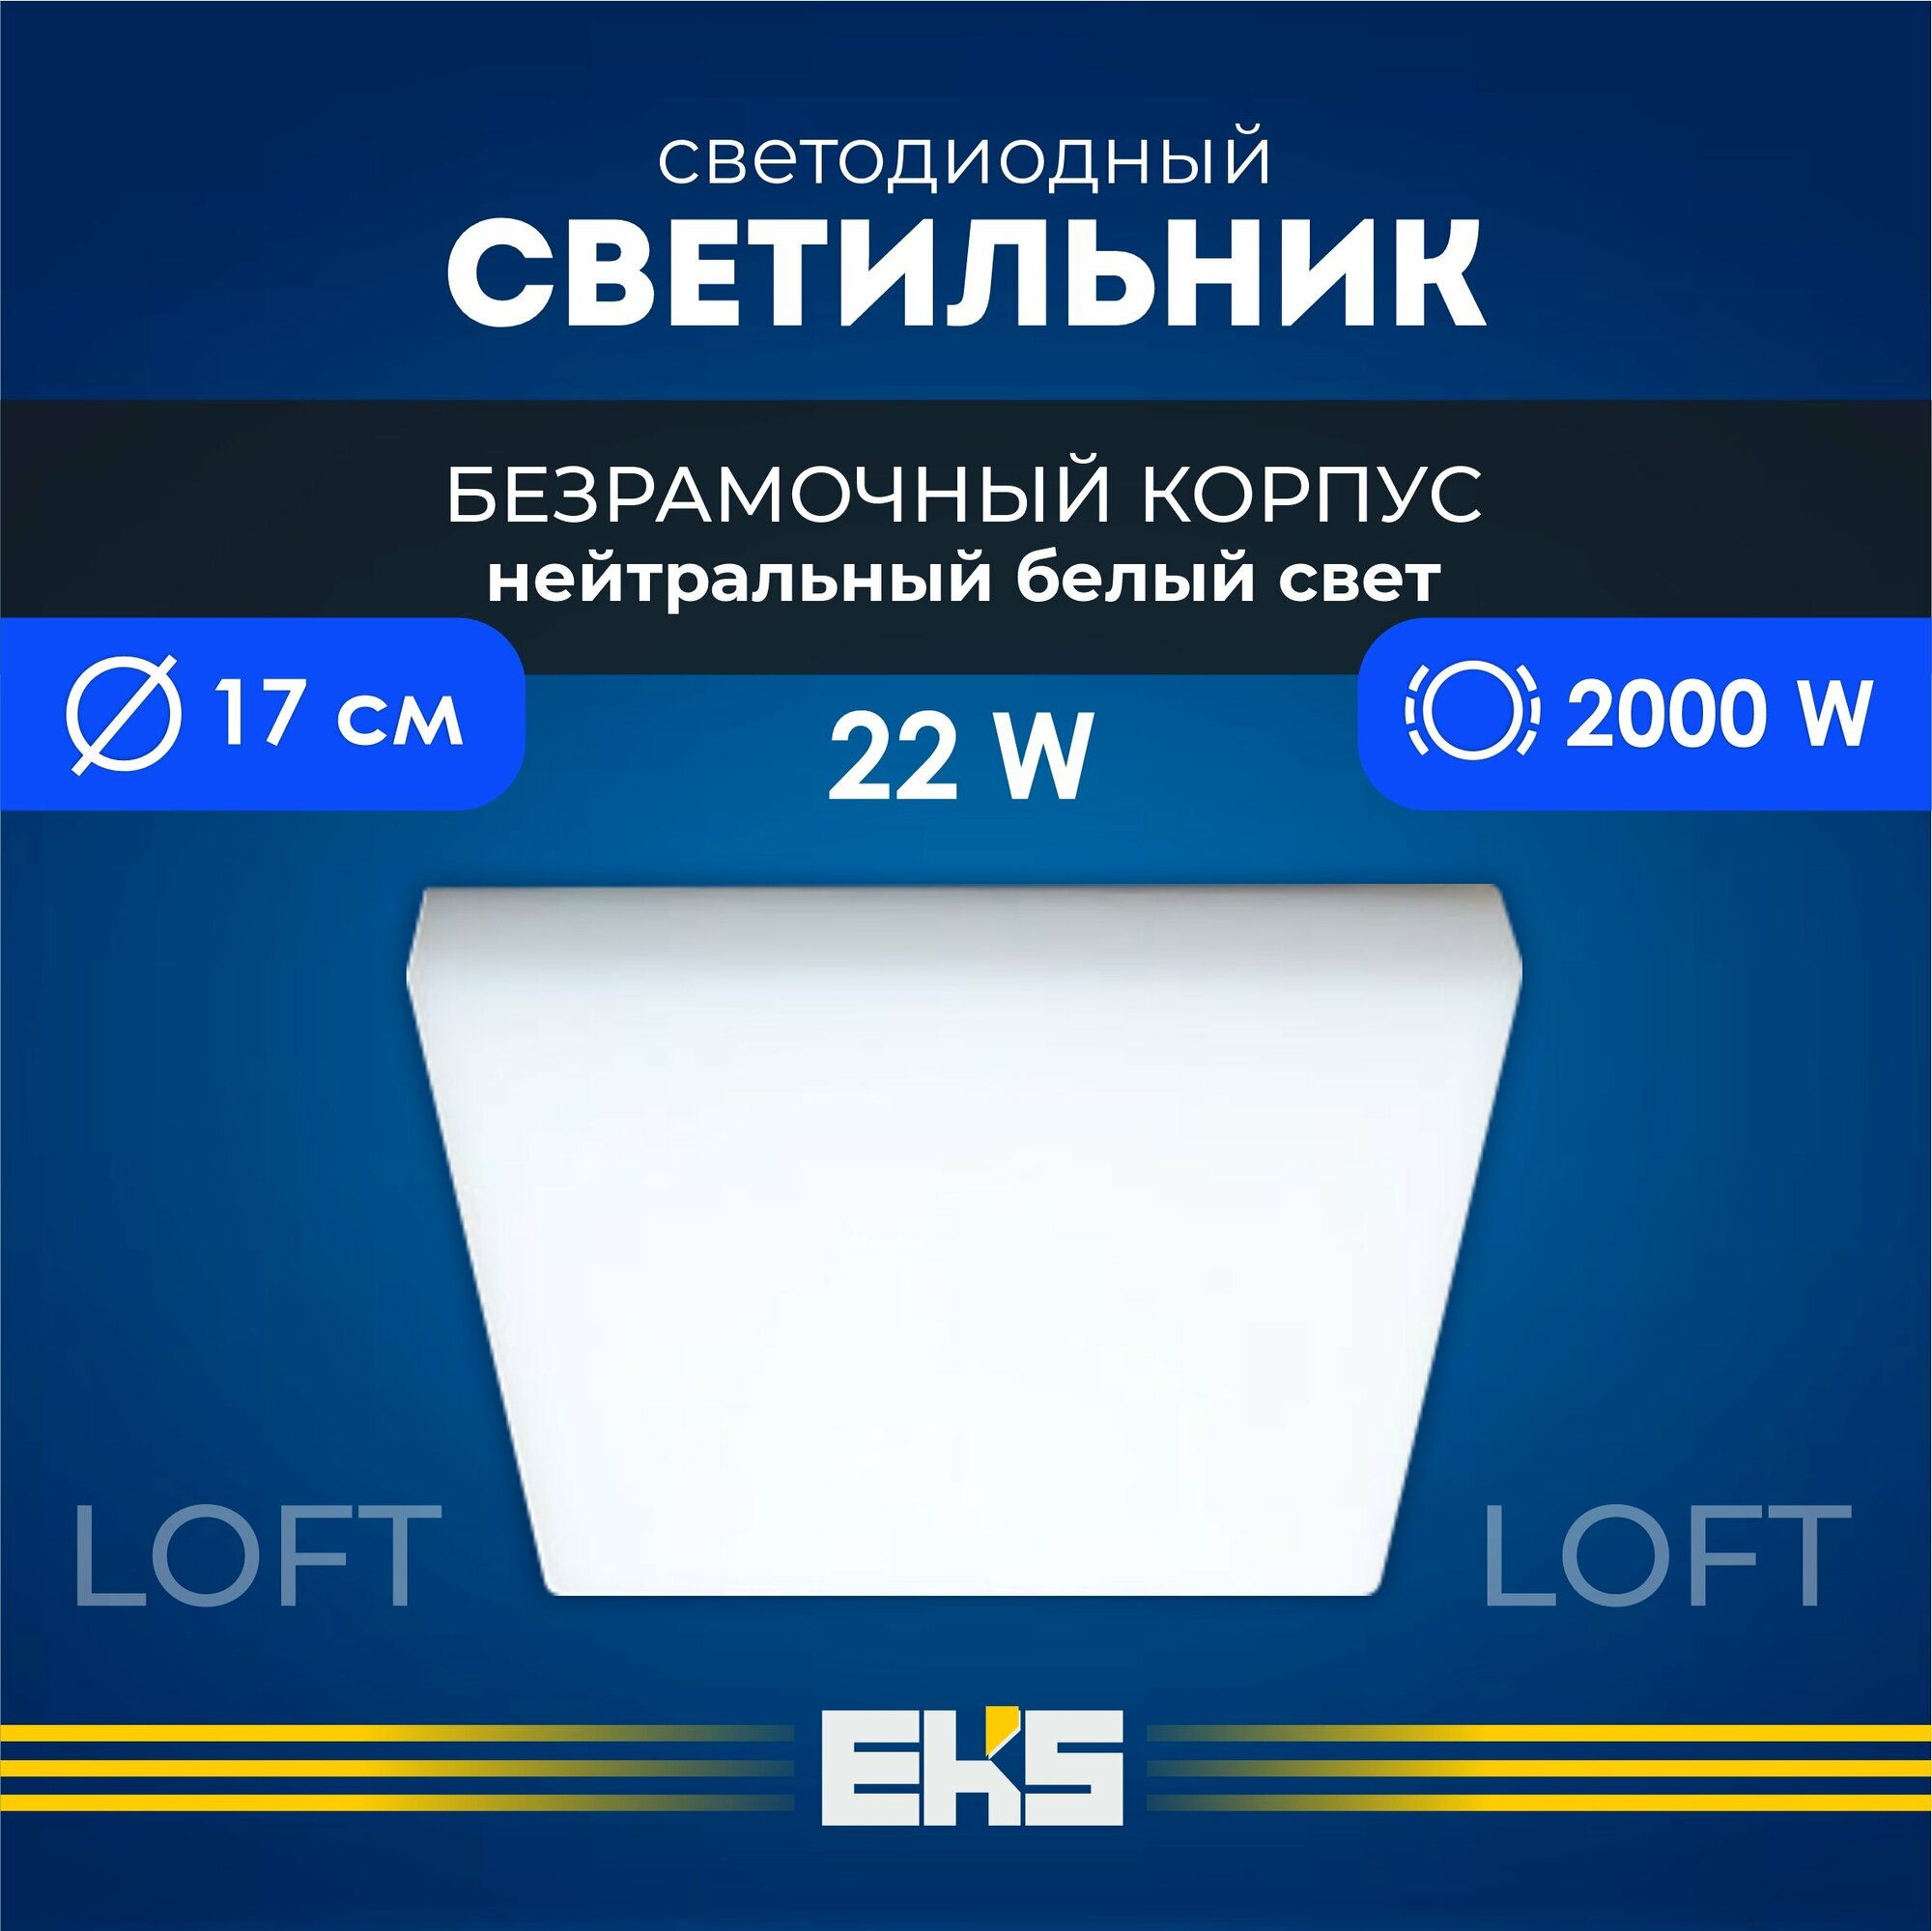 Встраиваемый светильник EKS LOFT - Светодиодная панель LED панель квадрат безрамочная (22 Вт 2000 Лм) 1 шт.